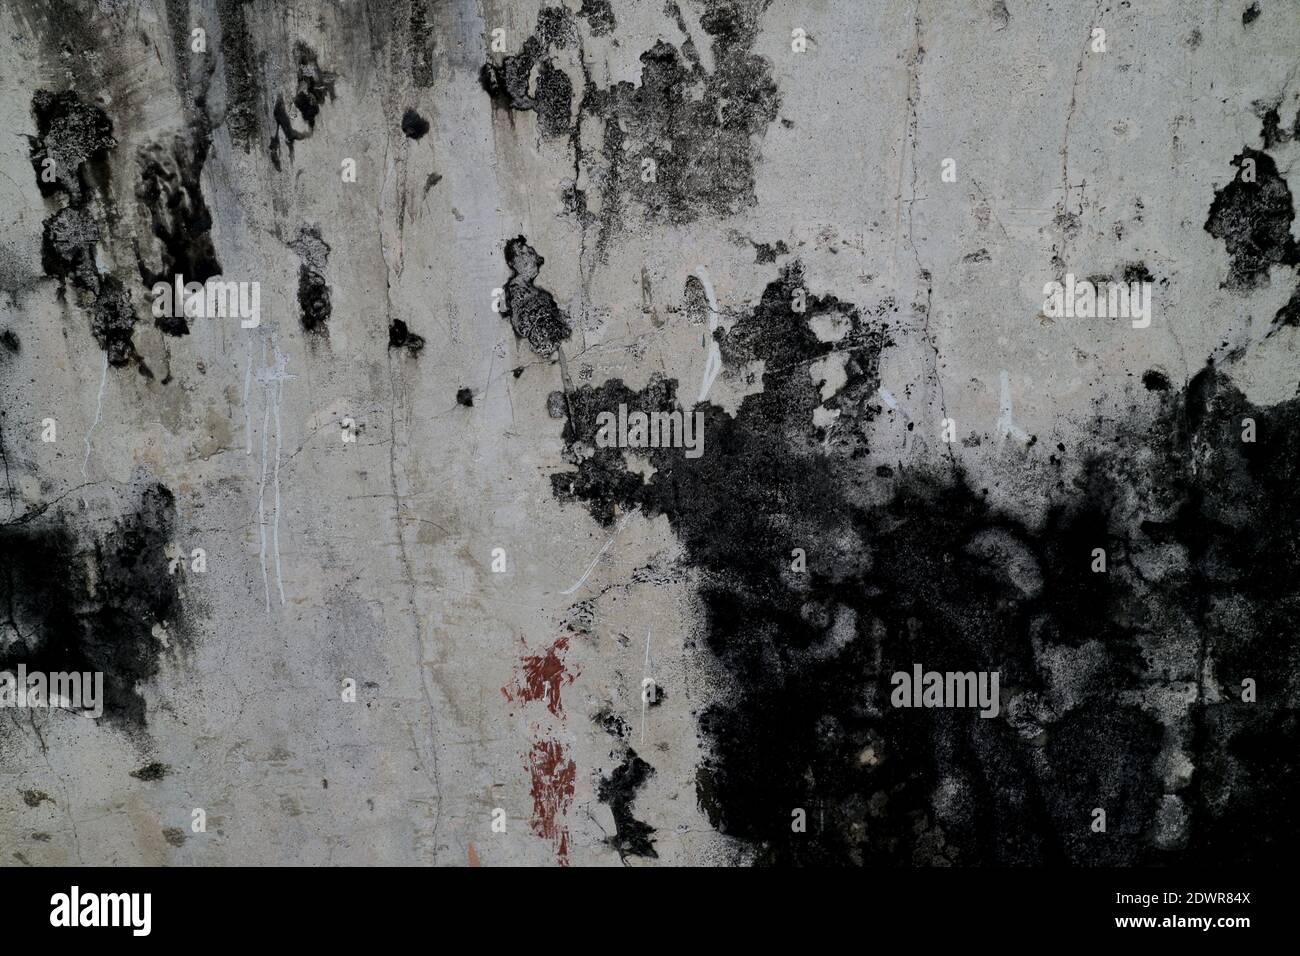 Cemento bianco e nero vecchio sfondo grigio della struttura delle pareti, caratterizzato da pareti in cemento testurizzato la tinta grigia profonda delle vecchie pareti in cemento. Foto Stock